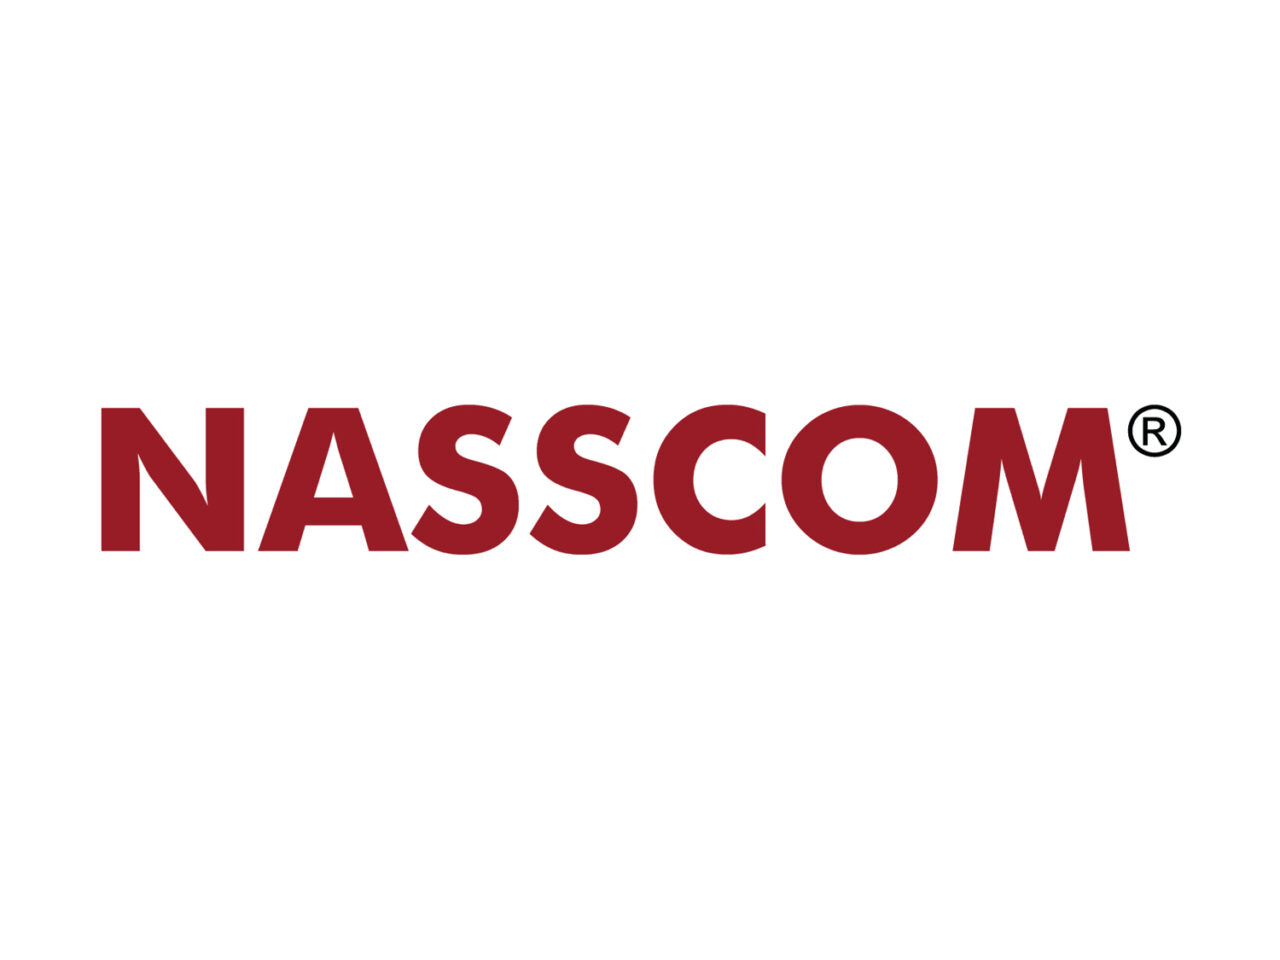 http://genesisrms.com/wp-content/uploads/2021/08/nasscom-logo-big-1280x960.jpg